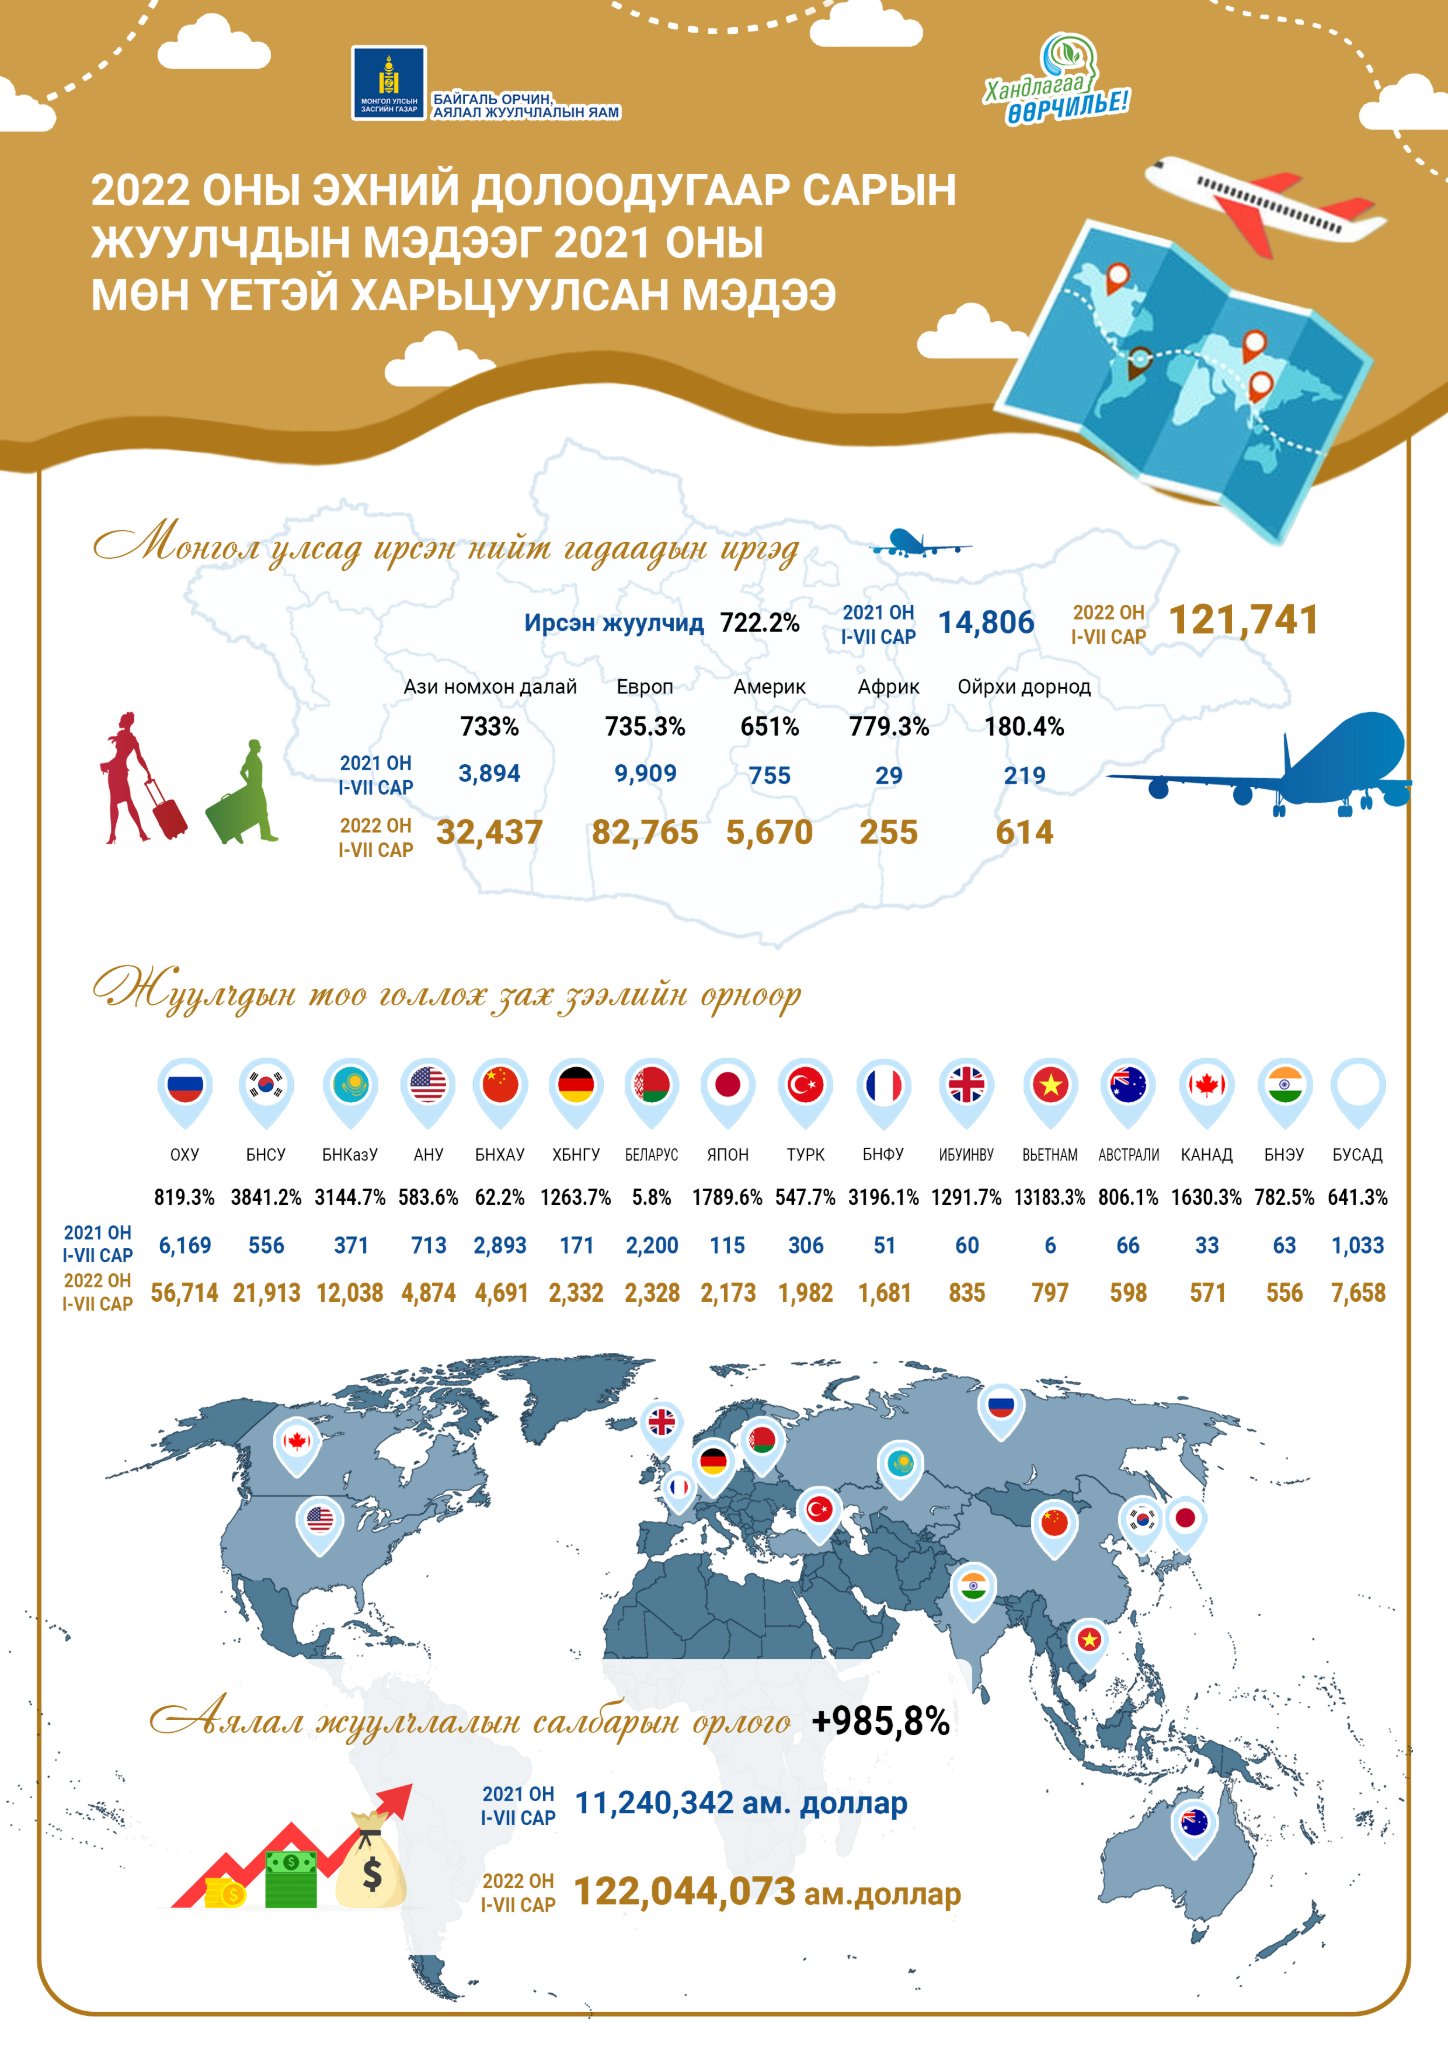 Монгол улсын аялал жуулчлалын салбарт 122,044,073 ам.долларын орлого оржээ